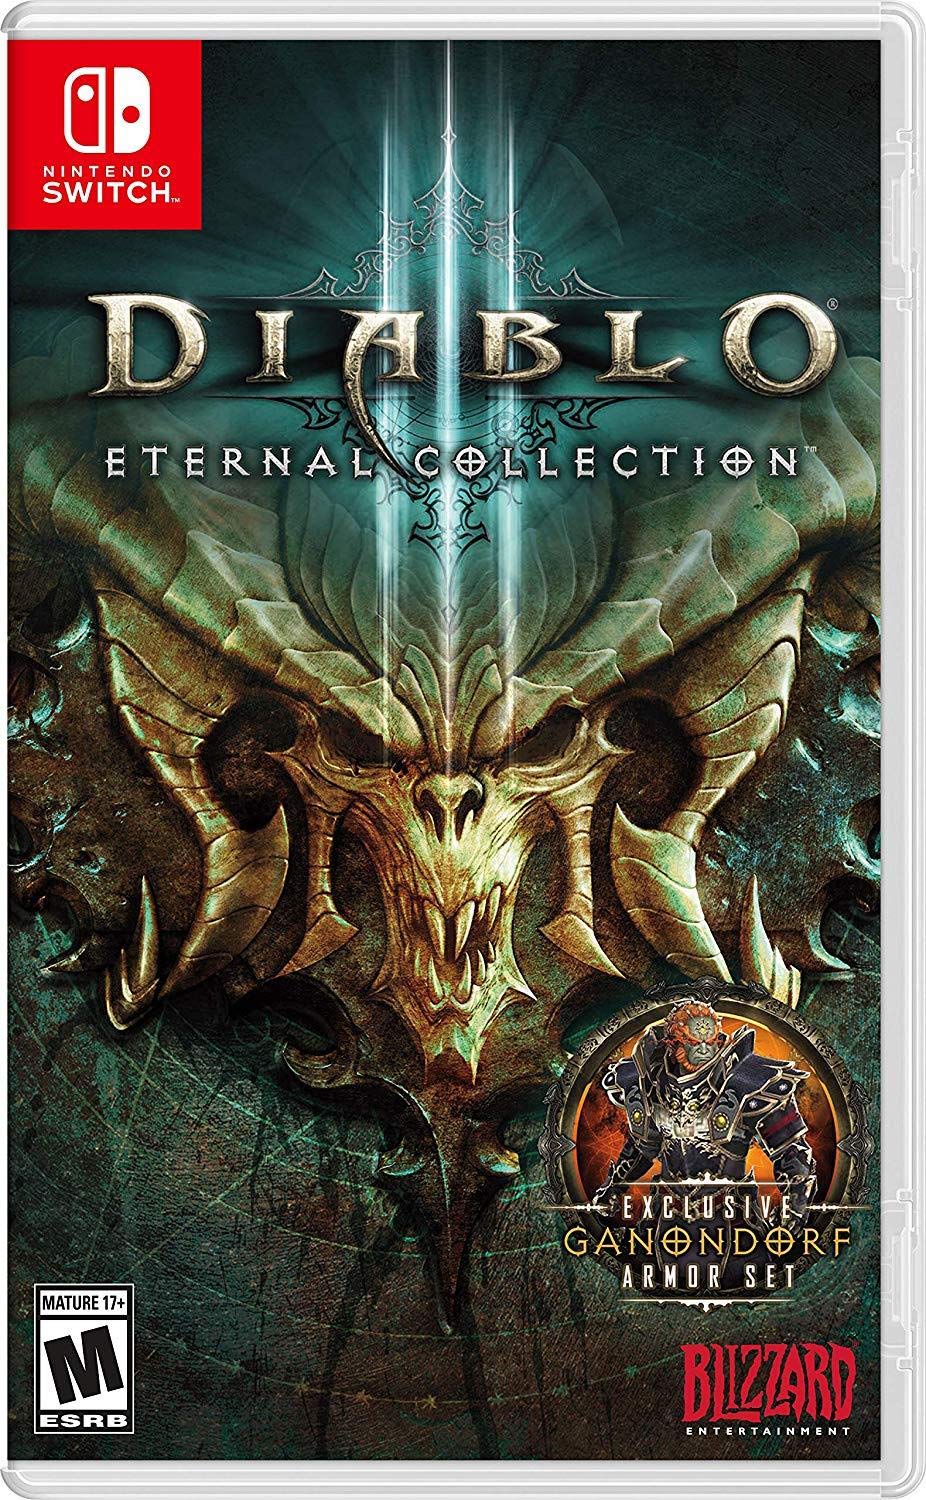 La historia de Diablo III